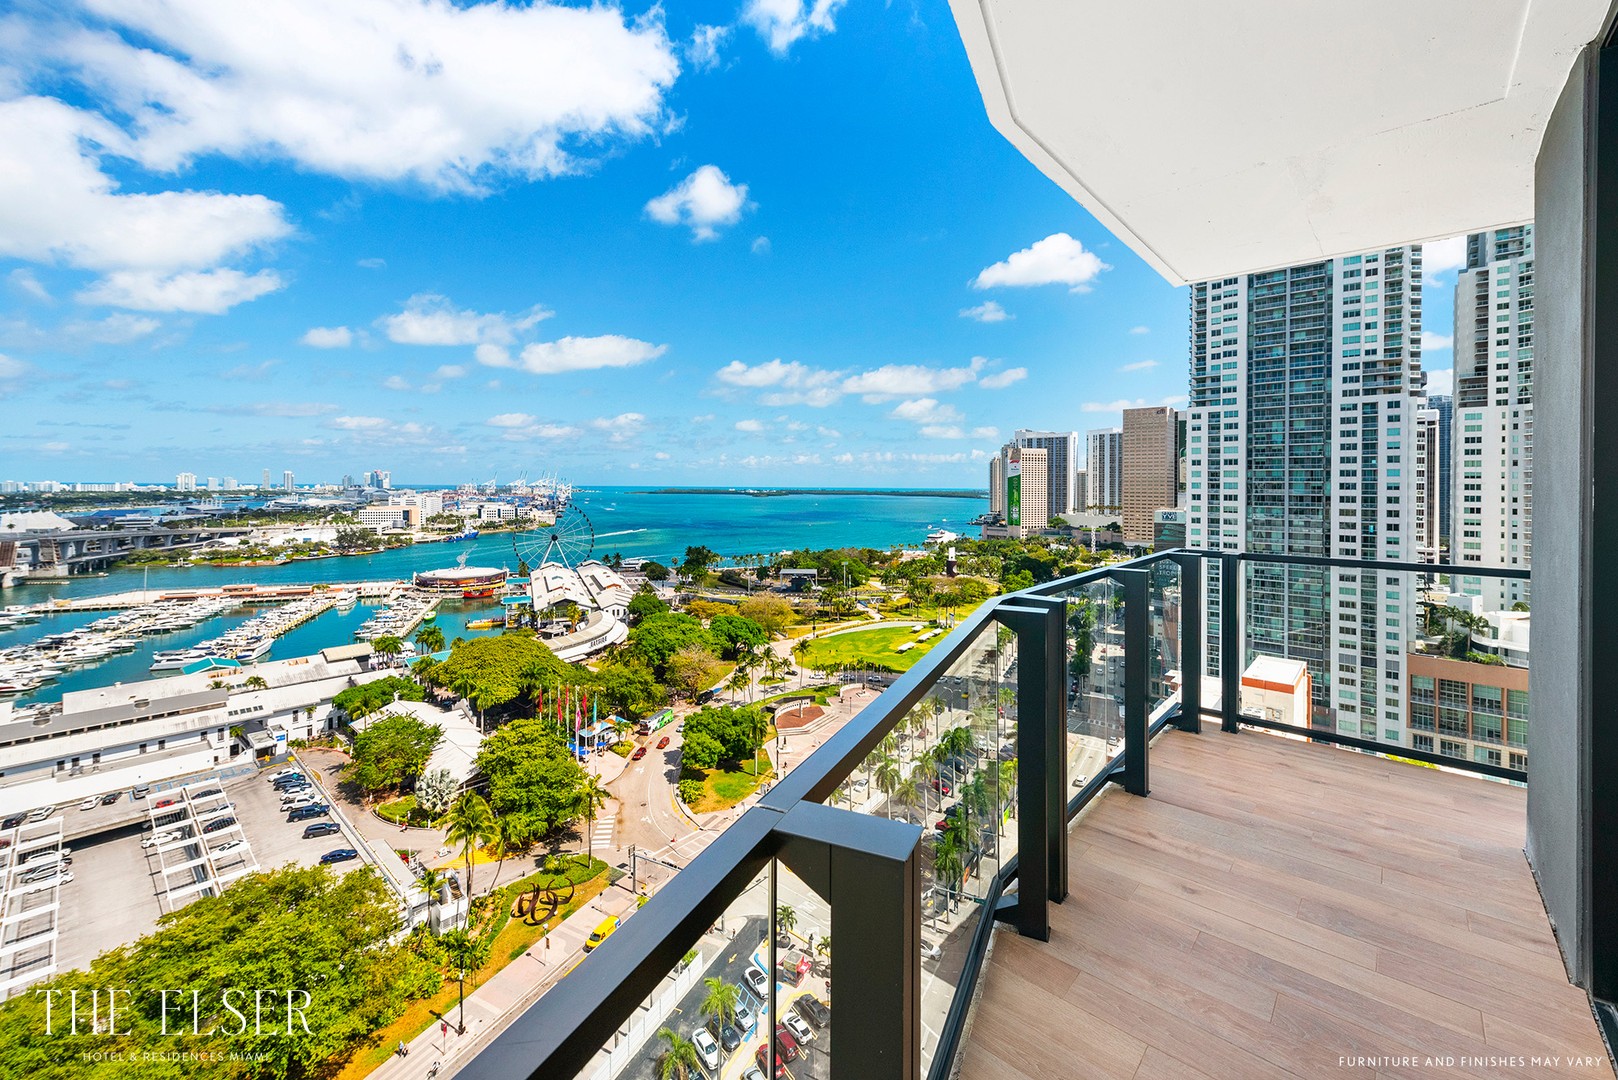 apartamentos - Apartamentos  en Venta Amueblados Frente. la Bahía de Biscayne  y de Miami 4